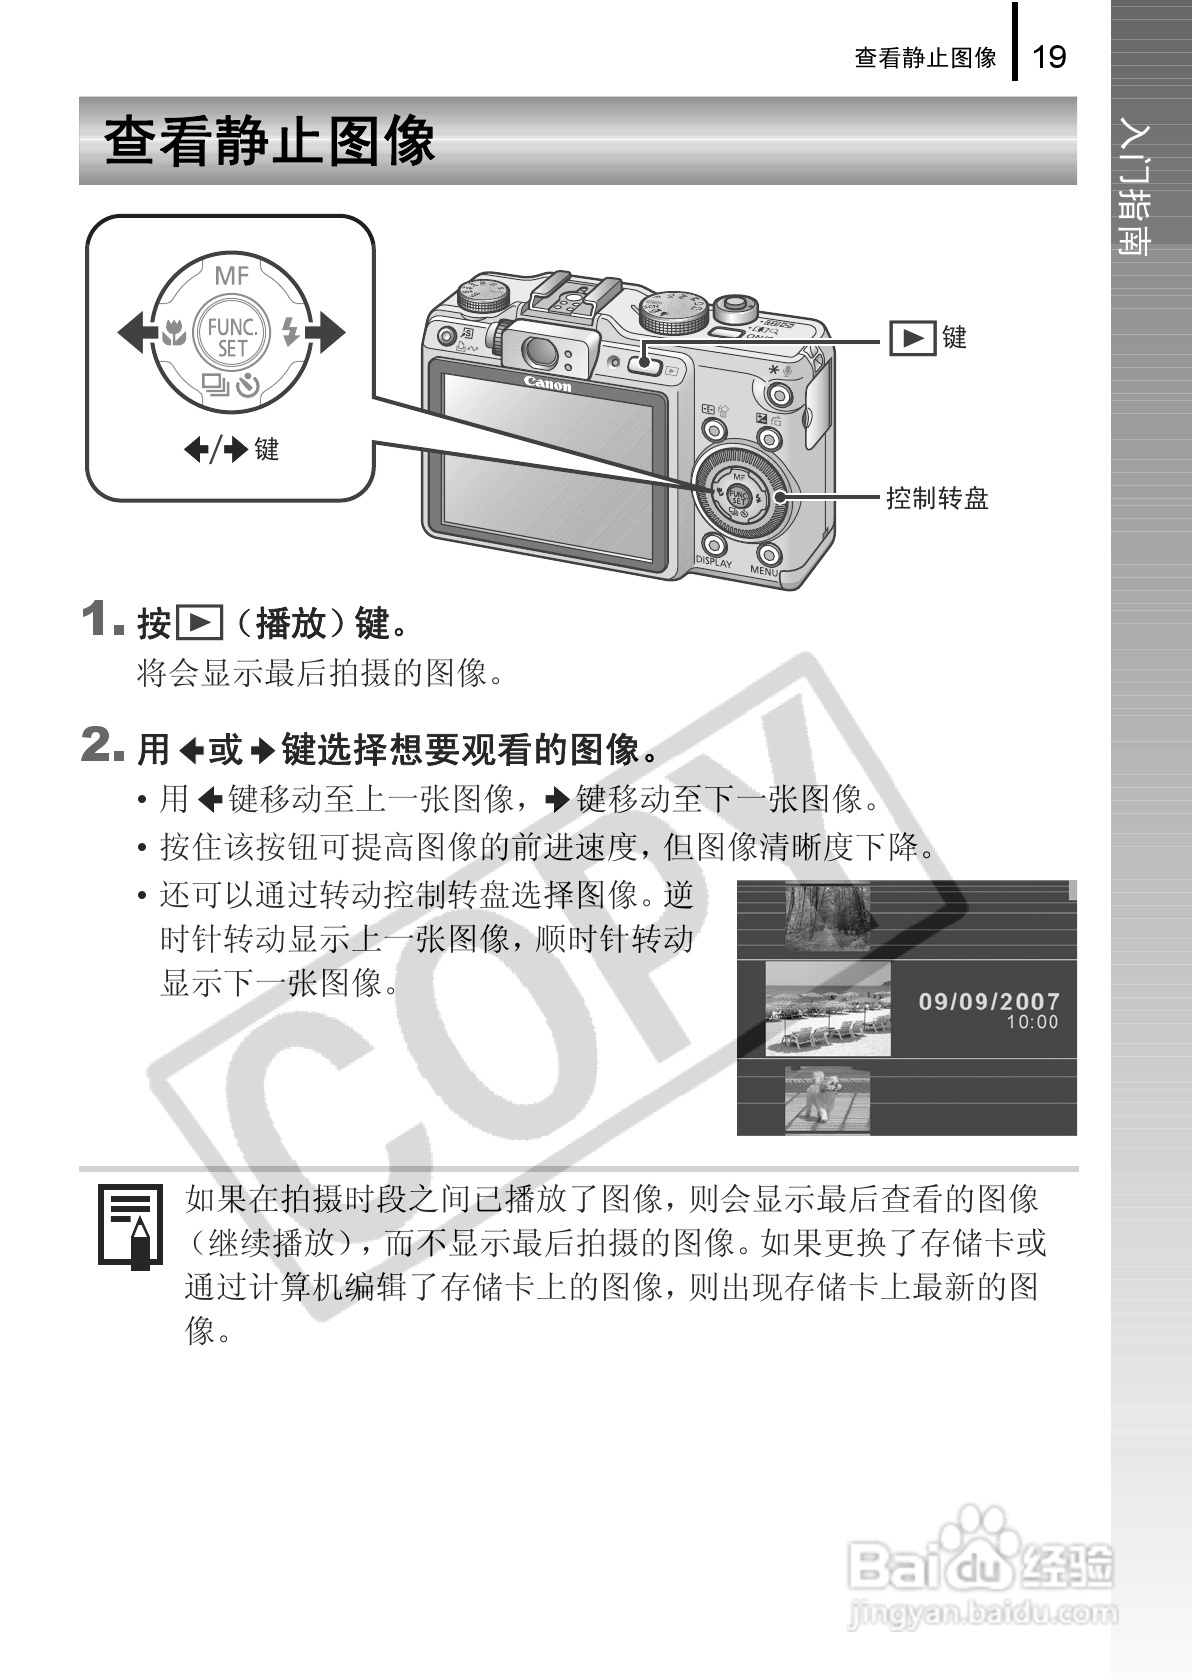 《佳能powershot g9数码相机使用说明书,主要介绍该产品的使用方法